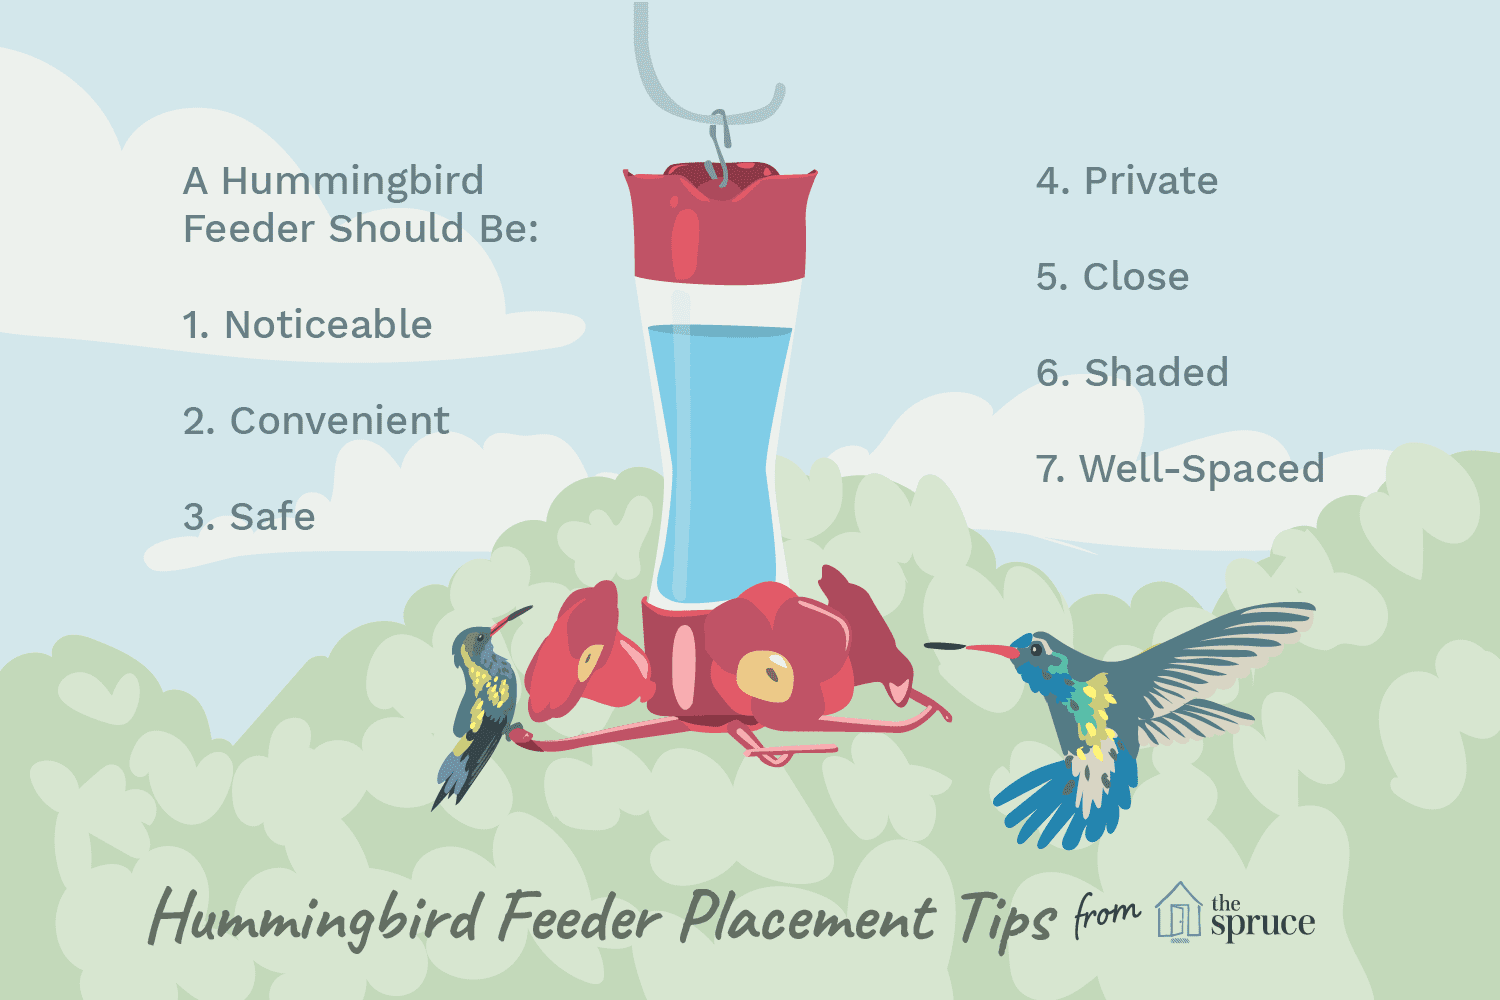 Imagen ilustrada de consejos de colocación de comederos para colibríes.